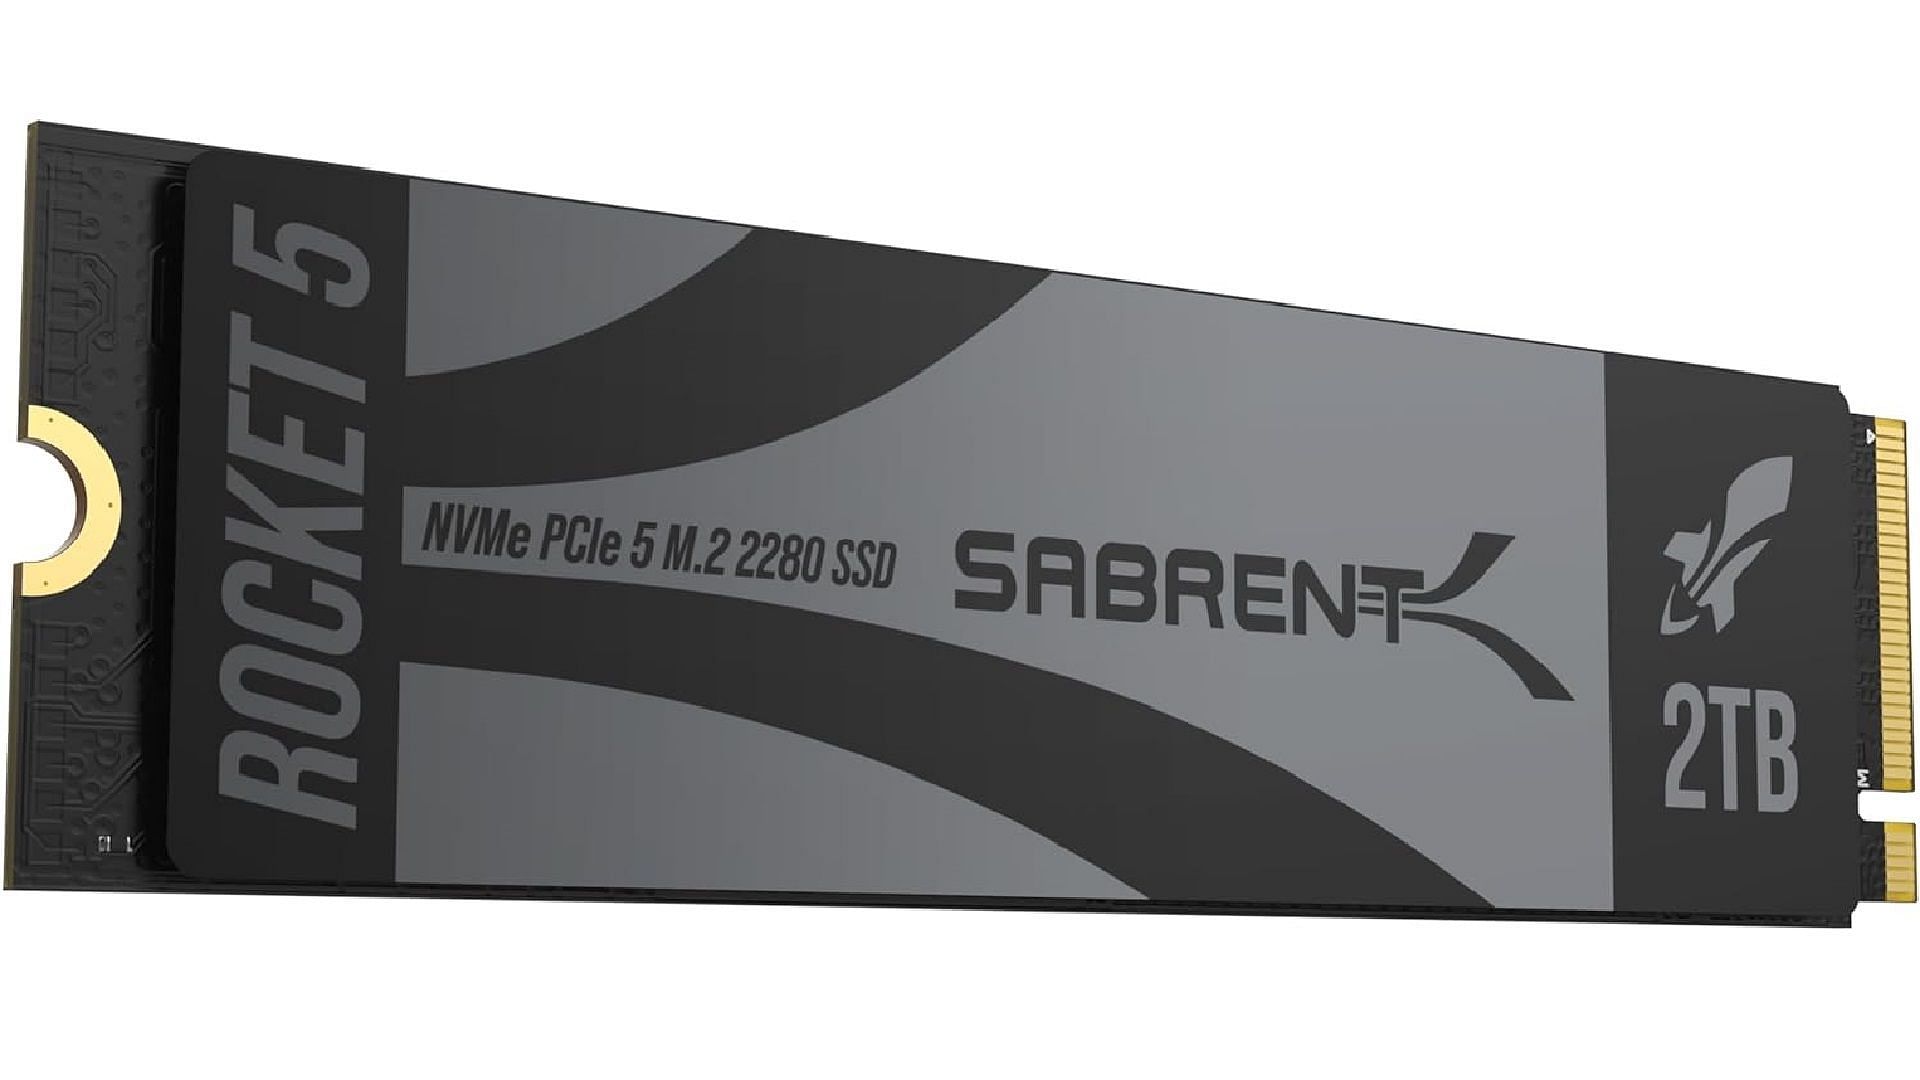 SABRENT Rocket 5 Gen 5 NVMe SSD (Image via Sabrent)